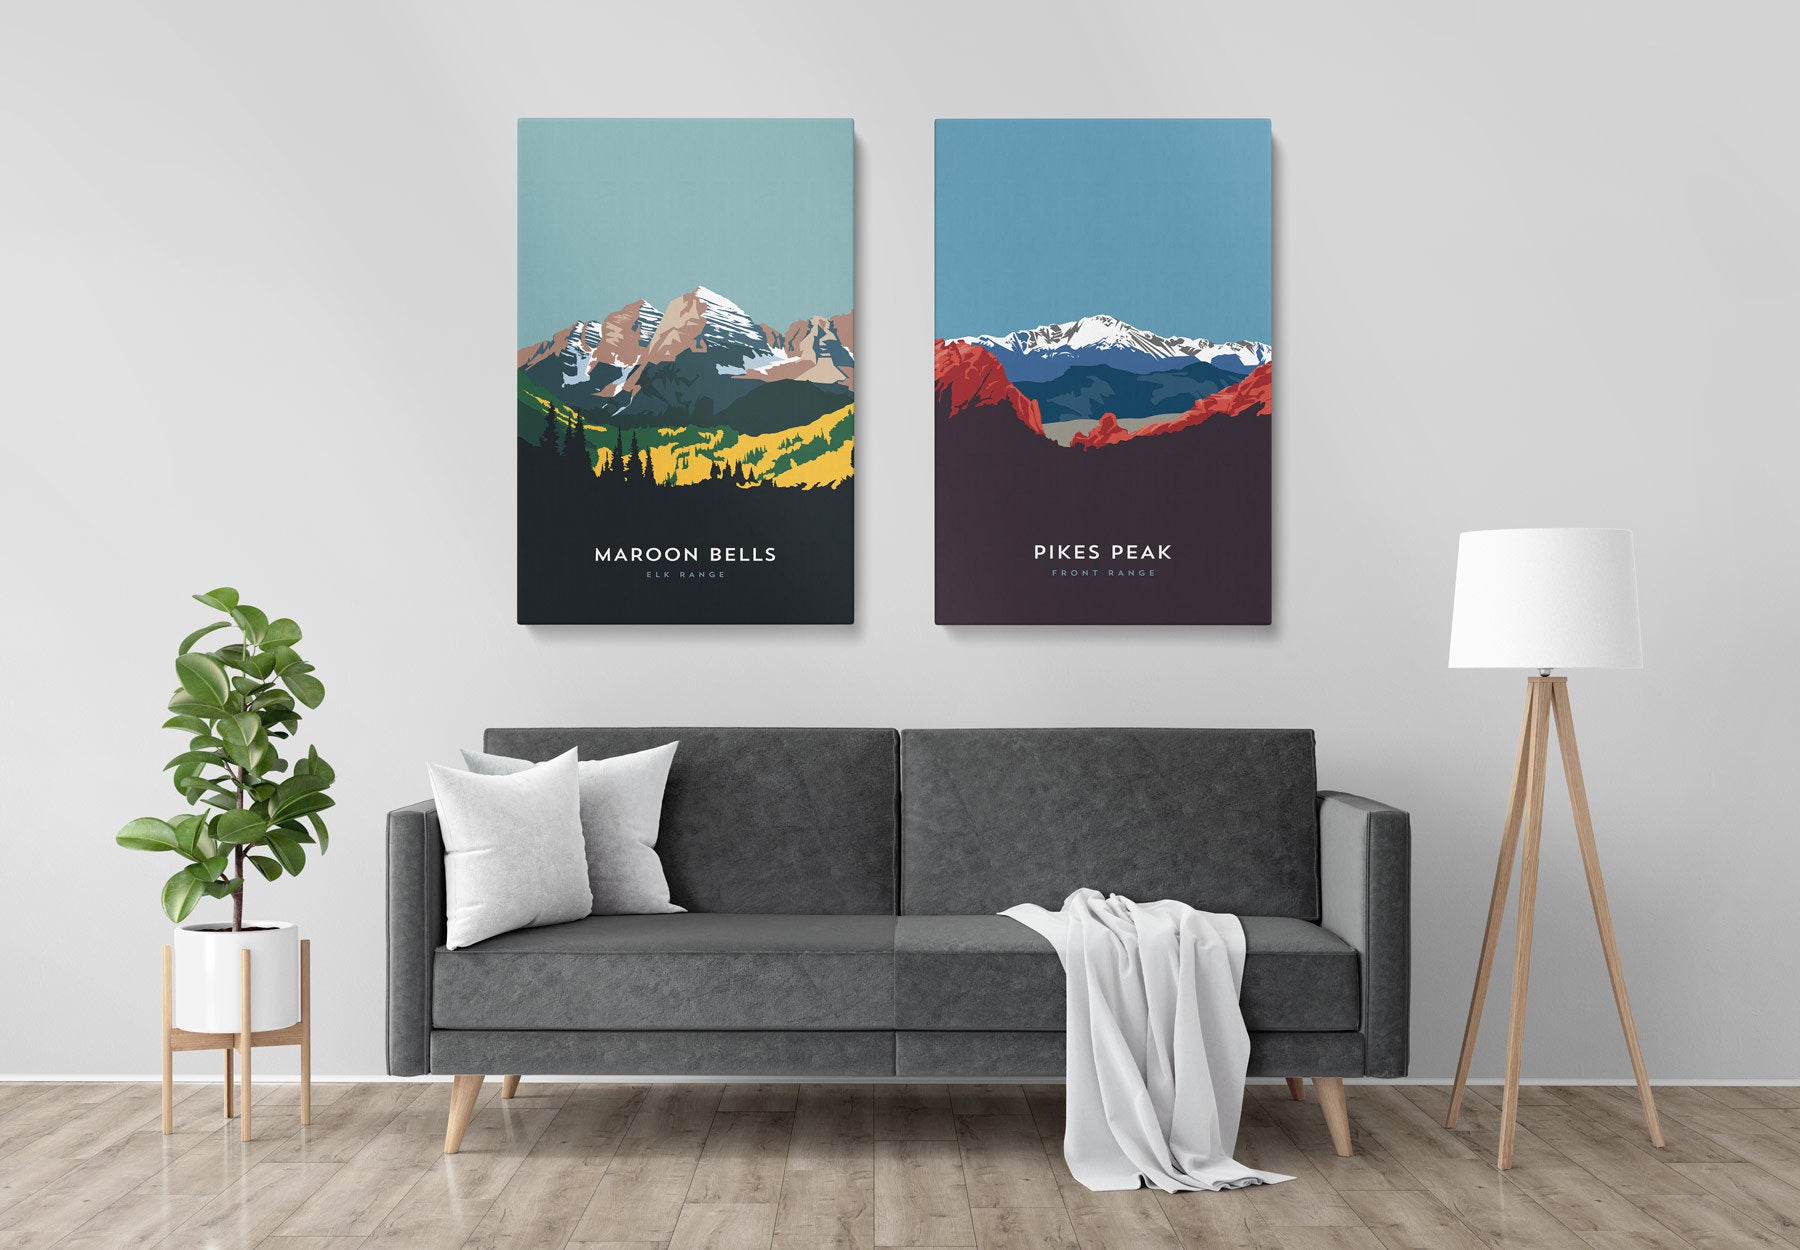 Mount Cameron Colorado 14er Canvas Print